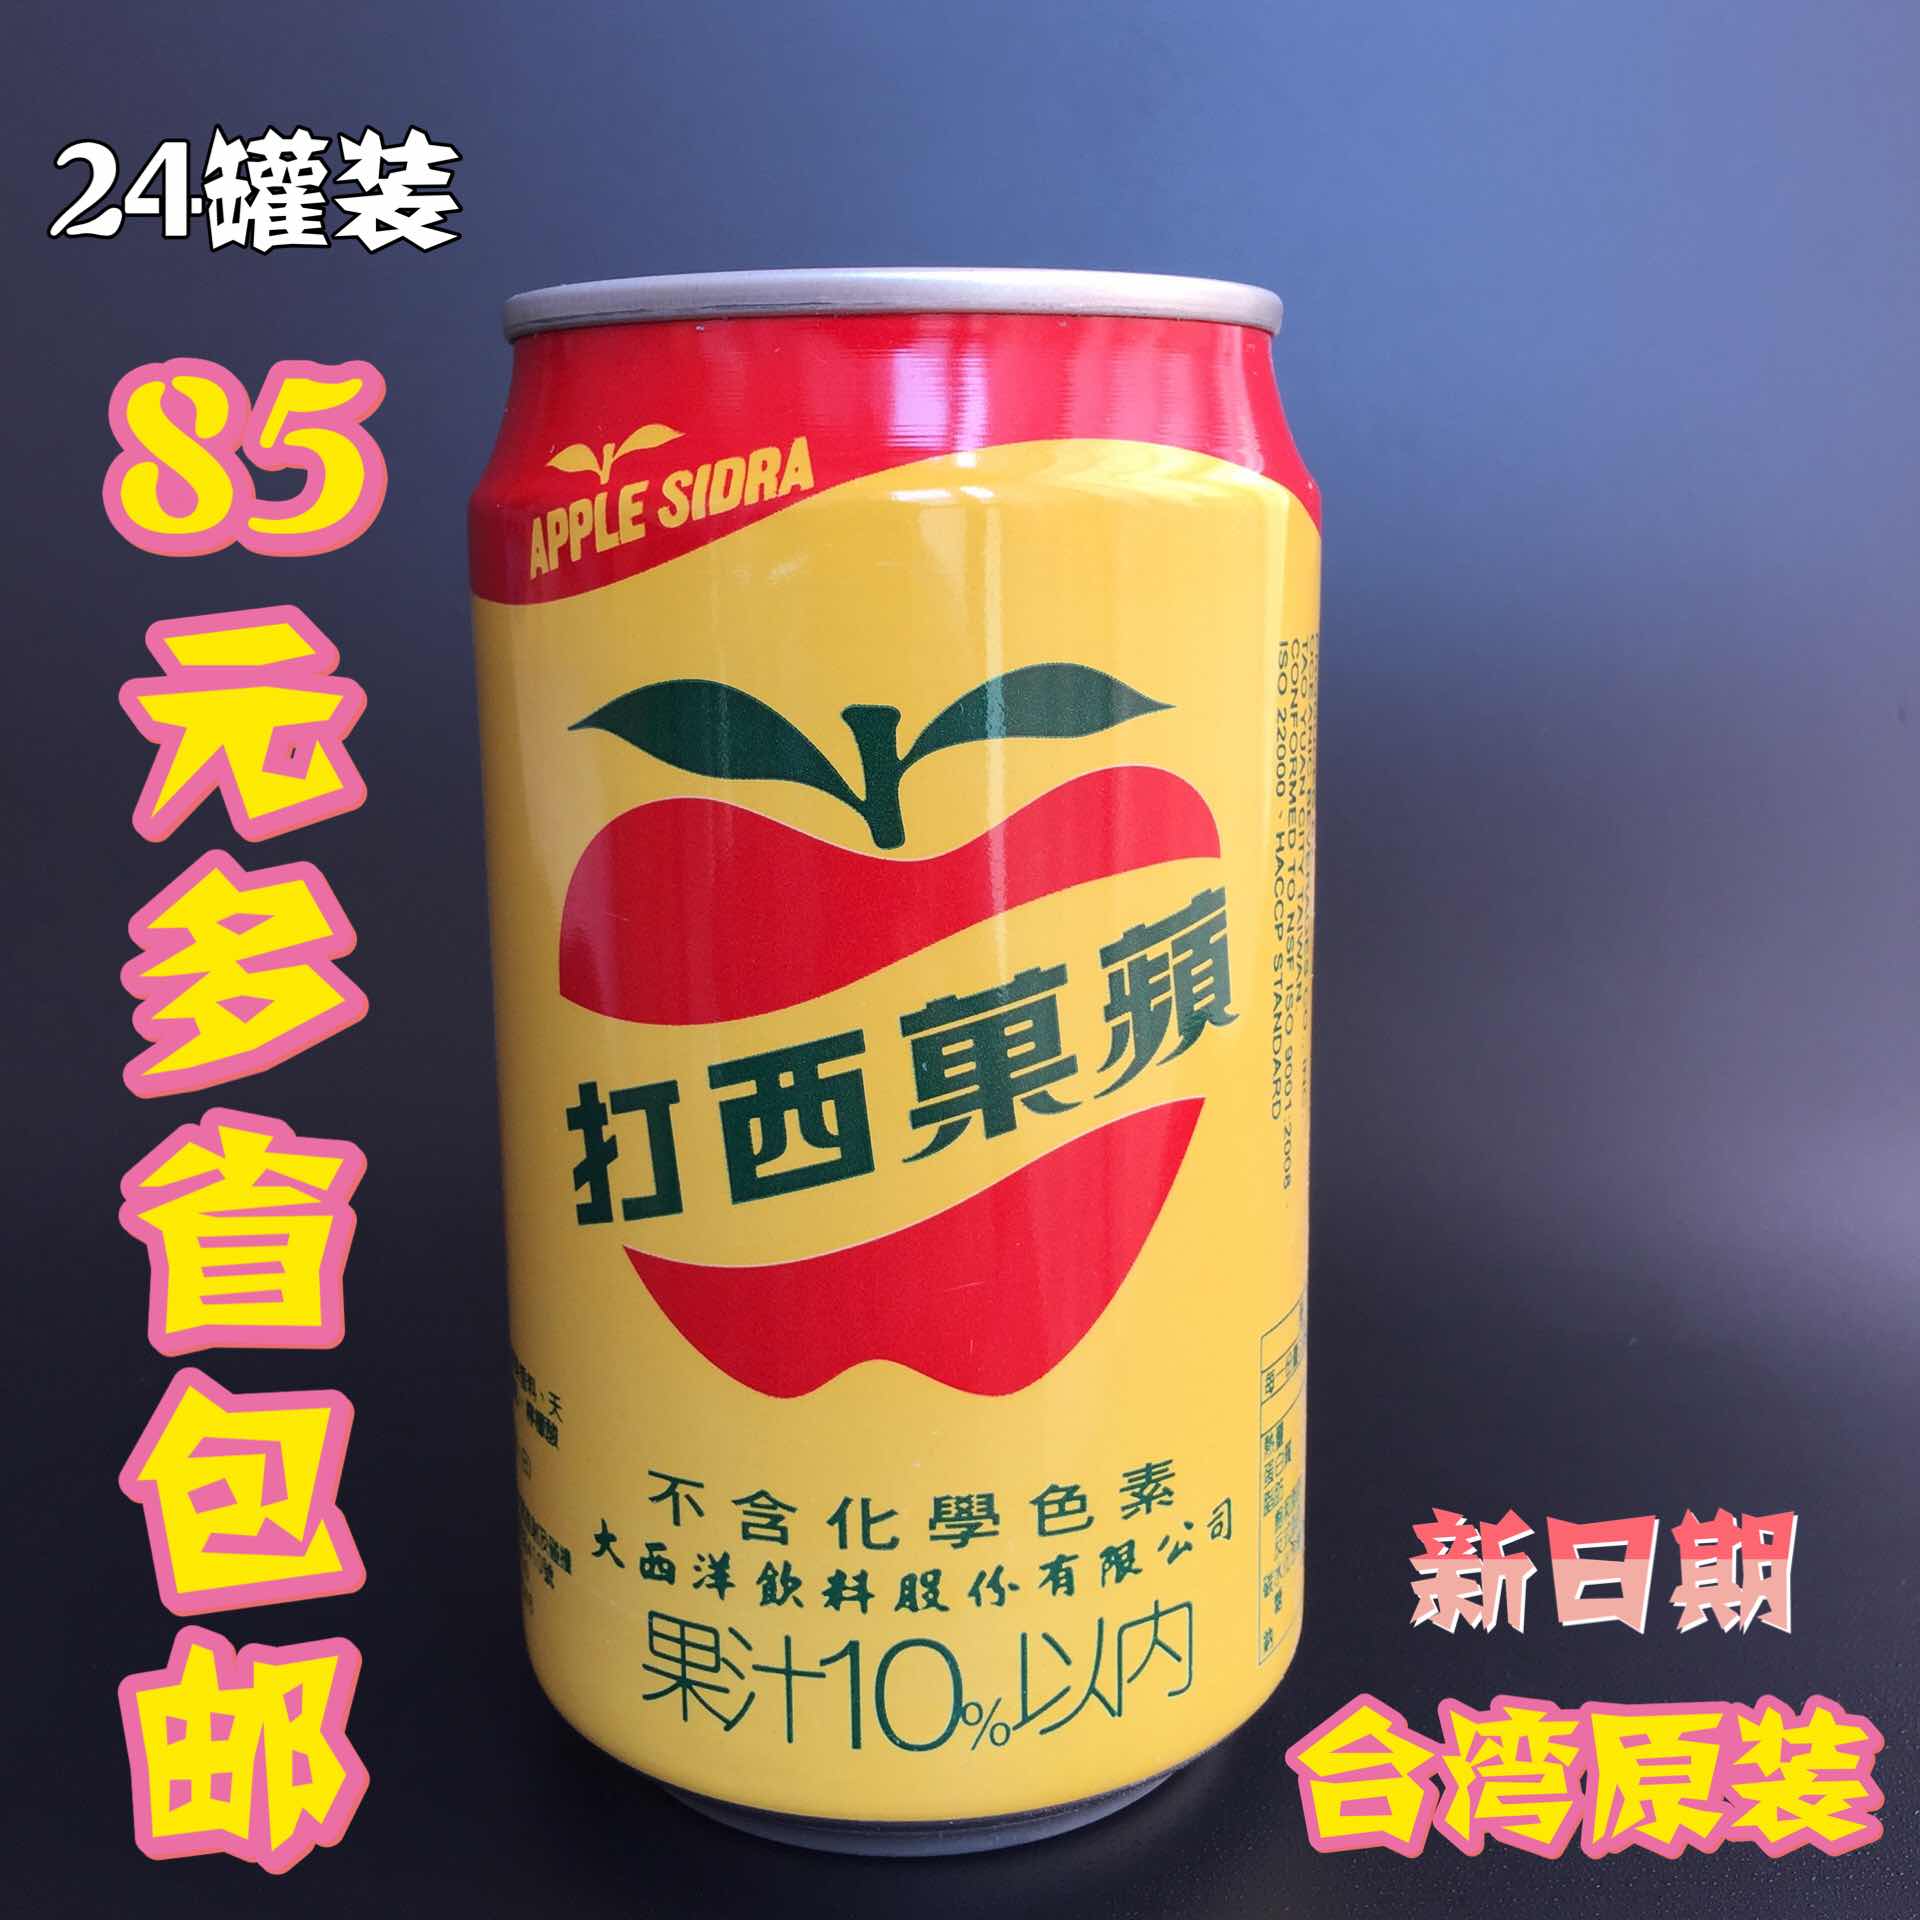 多省包邮 台湾原装碳酸饮料 大西洋苹果西打汽水330ml*24罐水果味